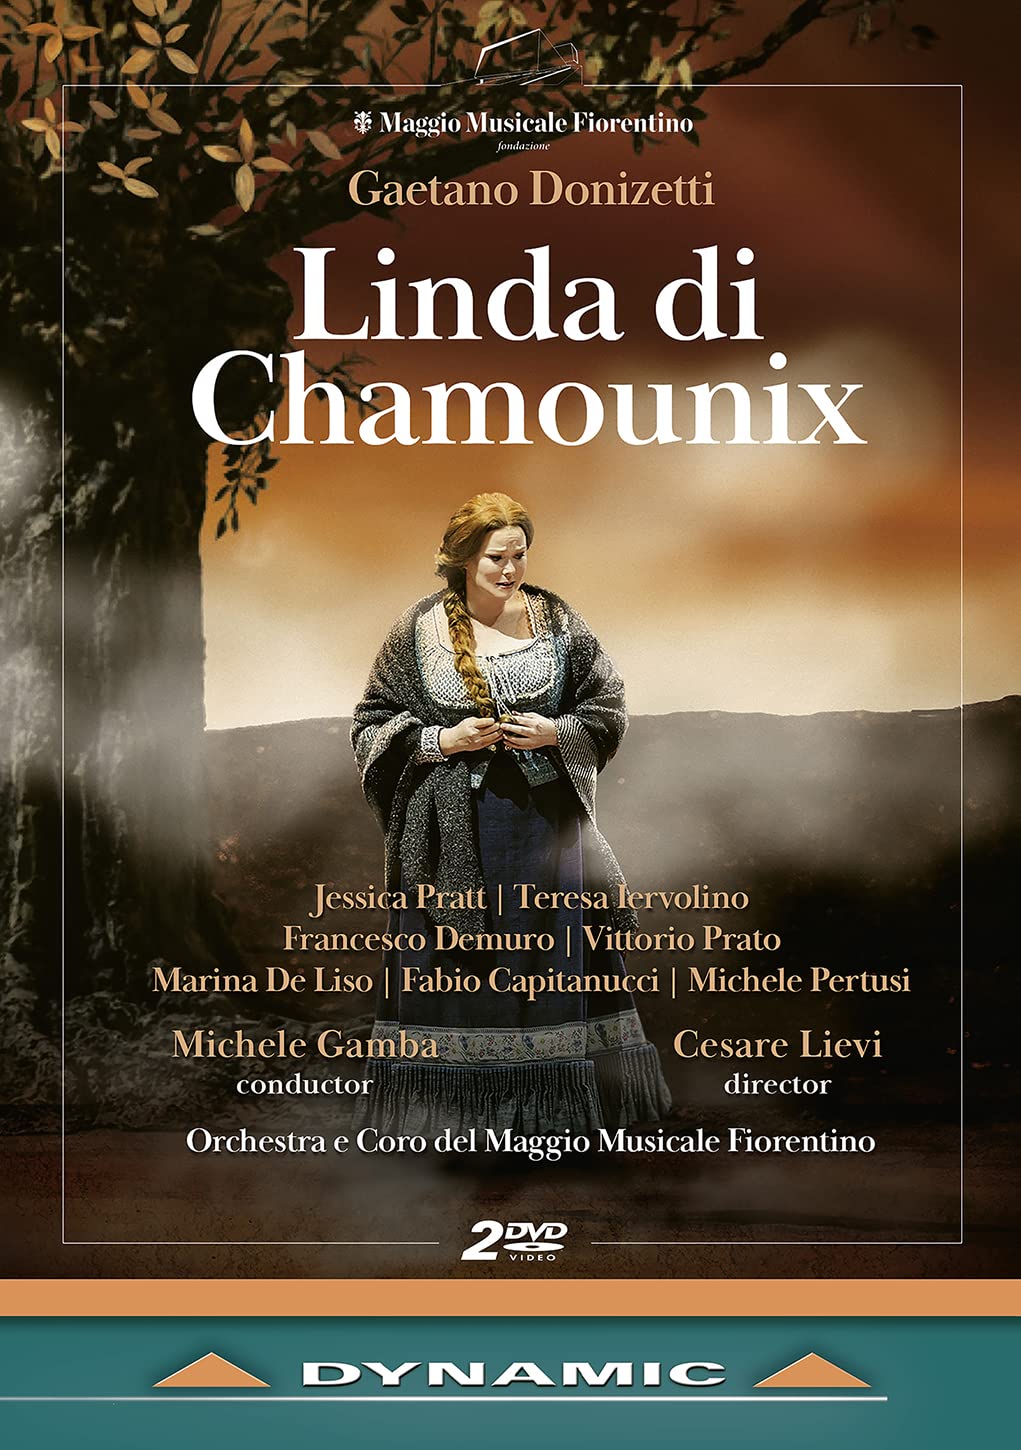 Music Dvd Gaetano Donizetti - Linda Di Chamounix (2 Dvd) NUOVO SIGILLATO, EDIZIONE DEL 27/10/2021 SUBITO DISPONIBILE